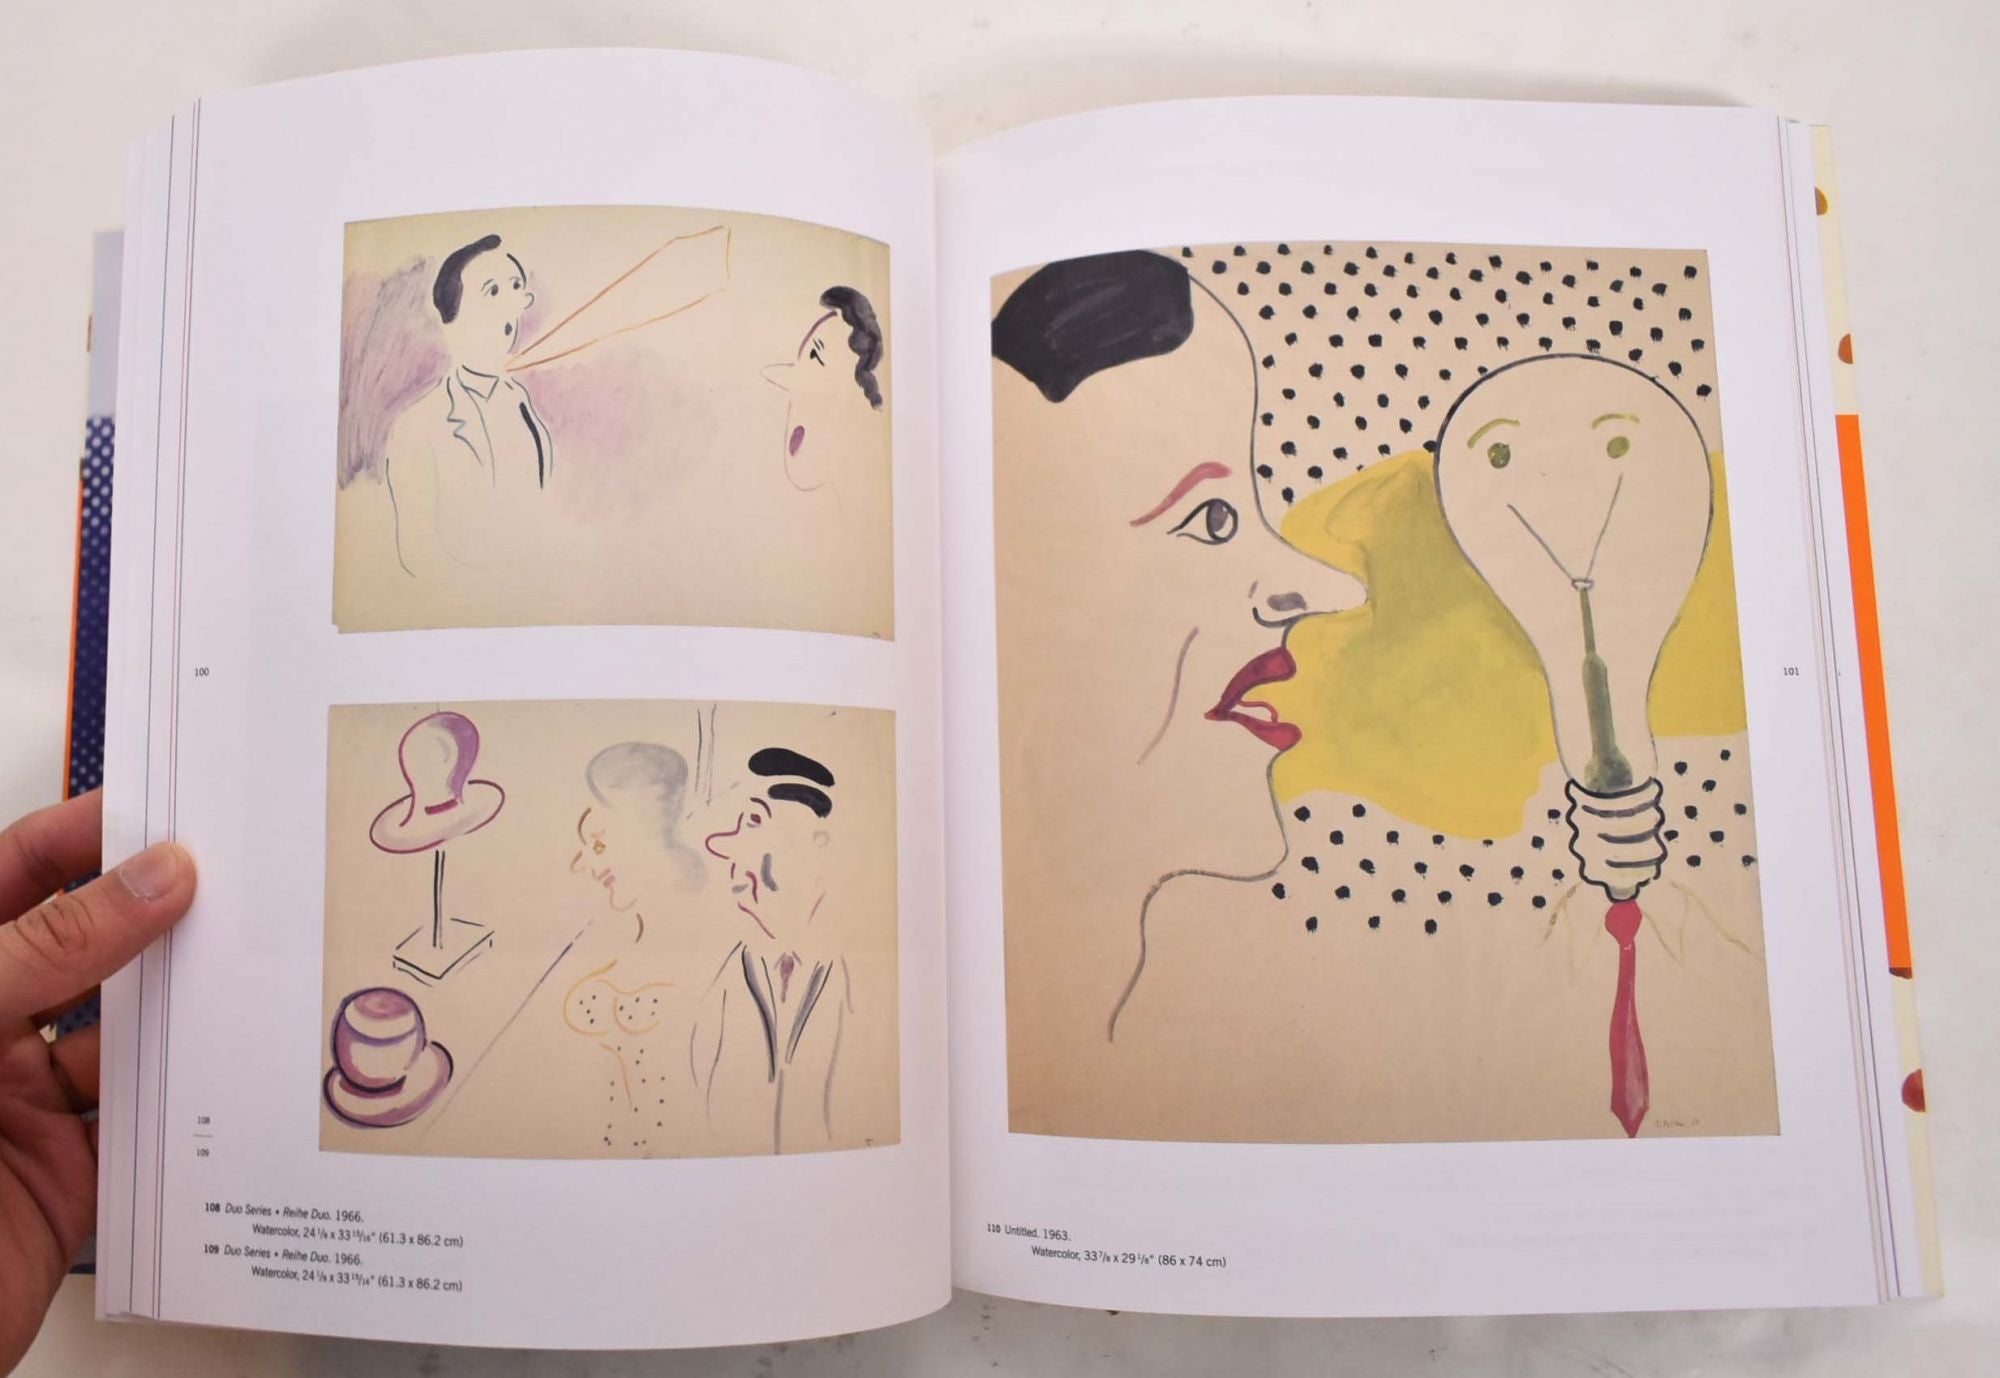 Sigmar Polke: Works on Paper, 1963-1974 | Margit Rowell, Michael